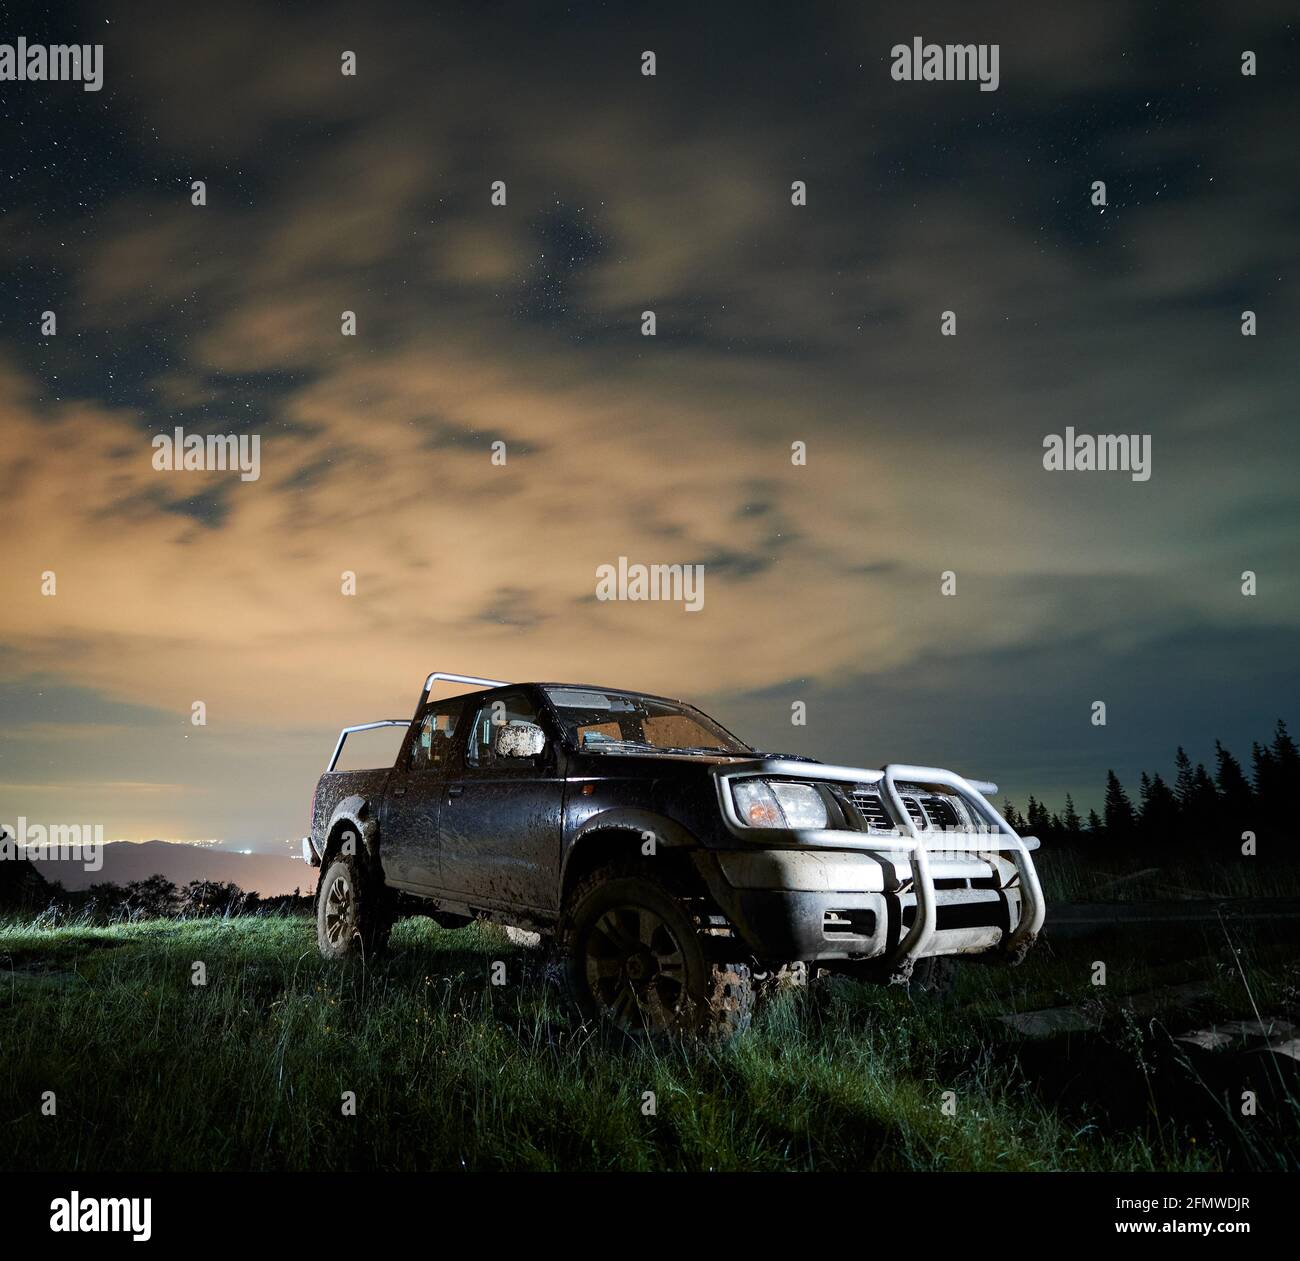 Camionnette éclairée en camion dans la boue sur la prairie montagneuse la nuit sous ciel étoilé nuageux. Espace de copie, vue de face. Concept de conduite extrême Banque D'Images